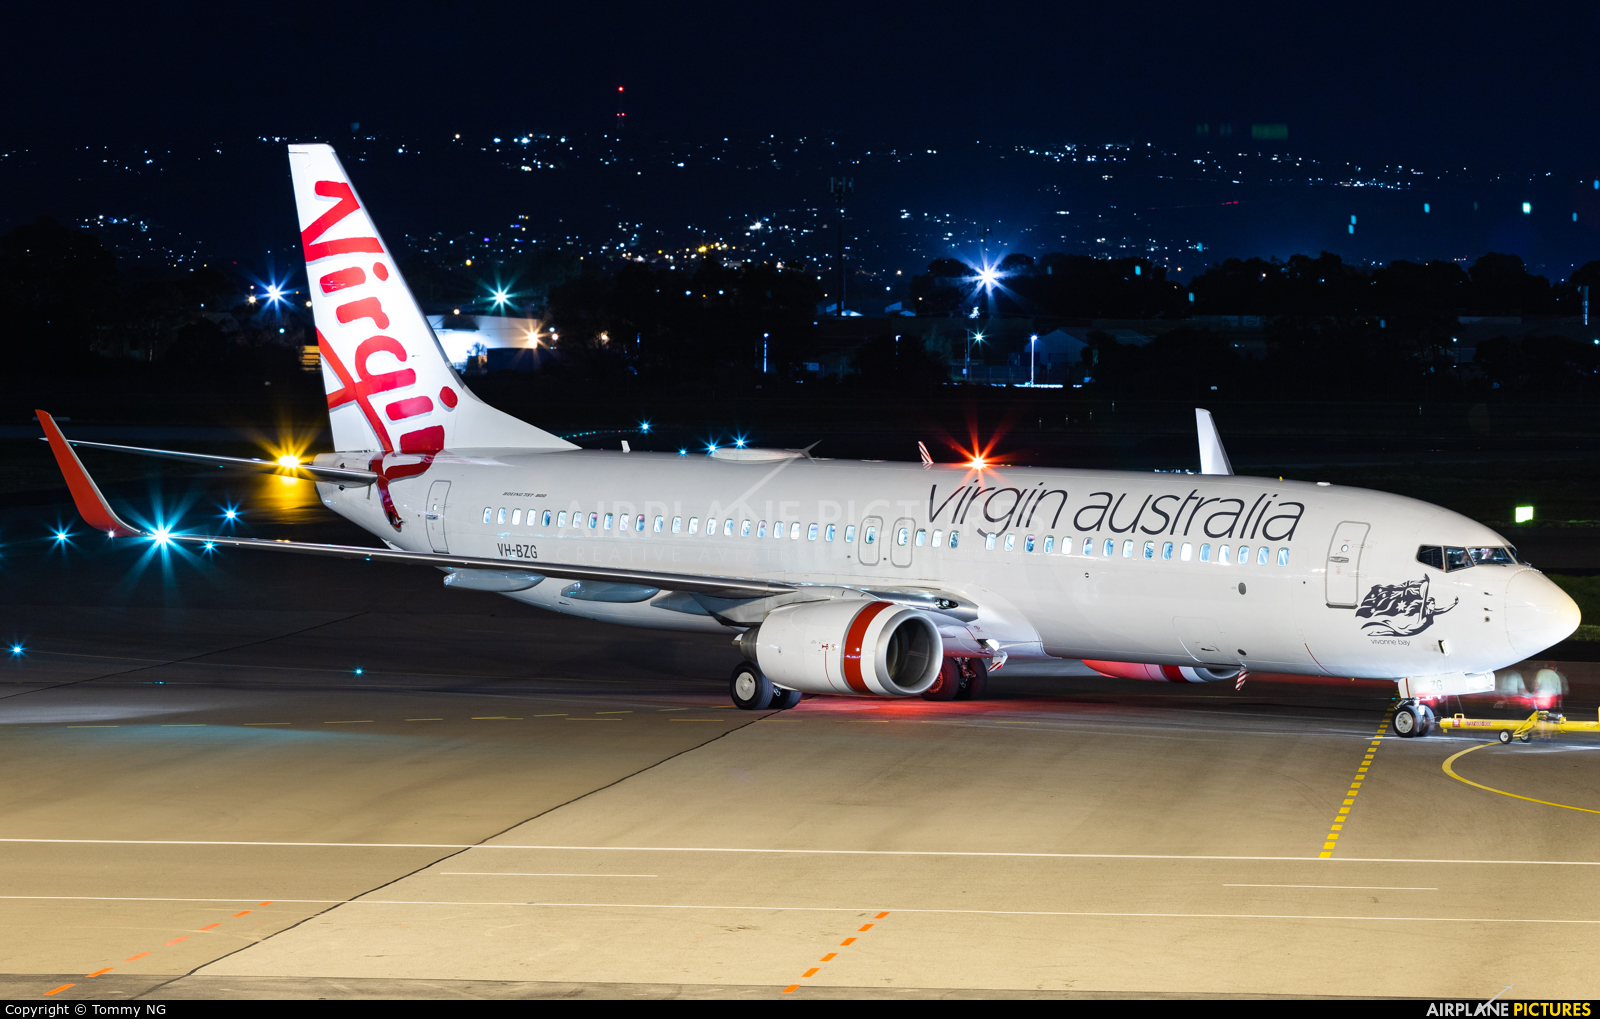 Virgin Australia VH-BZG aircraft at Adelaide Intl, SA